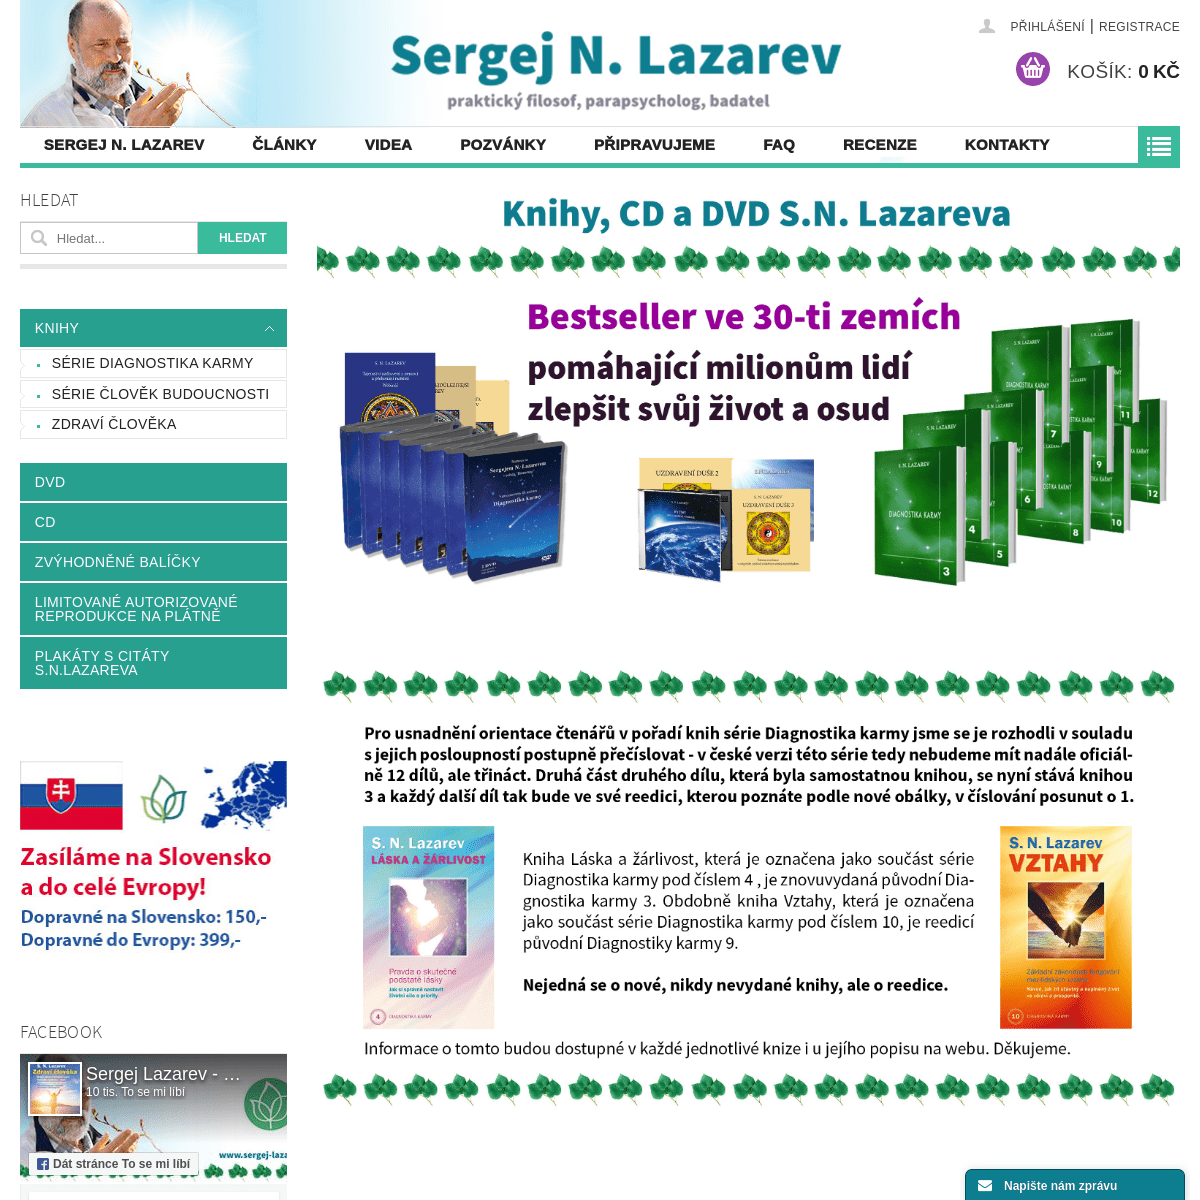 A complete backup of sergej-lazarev.cz